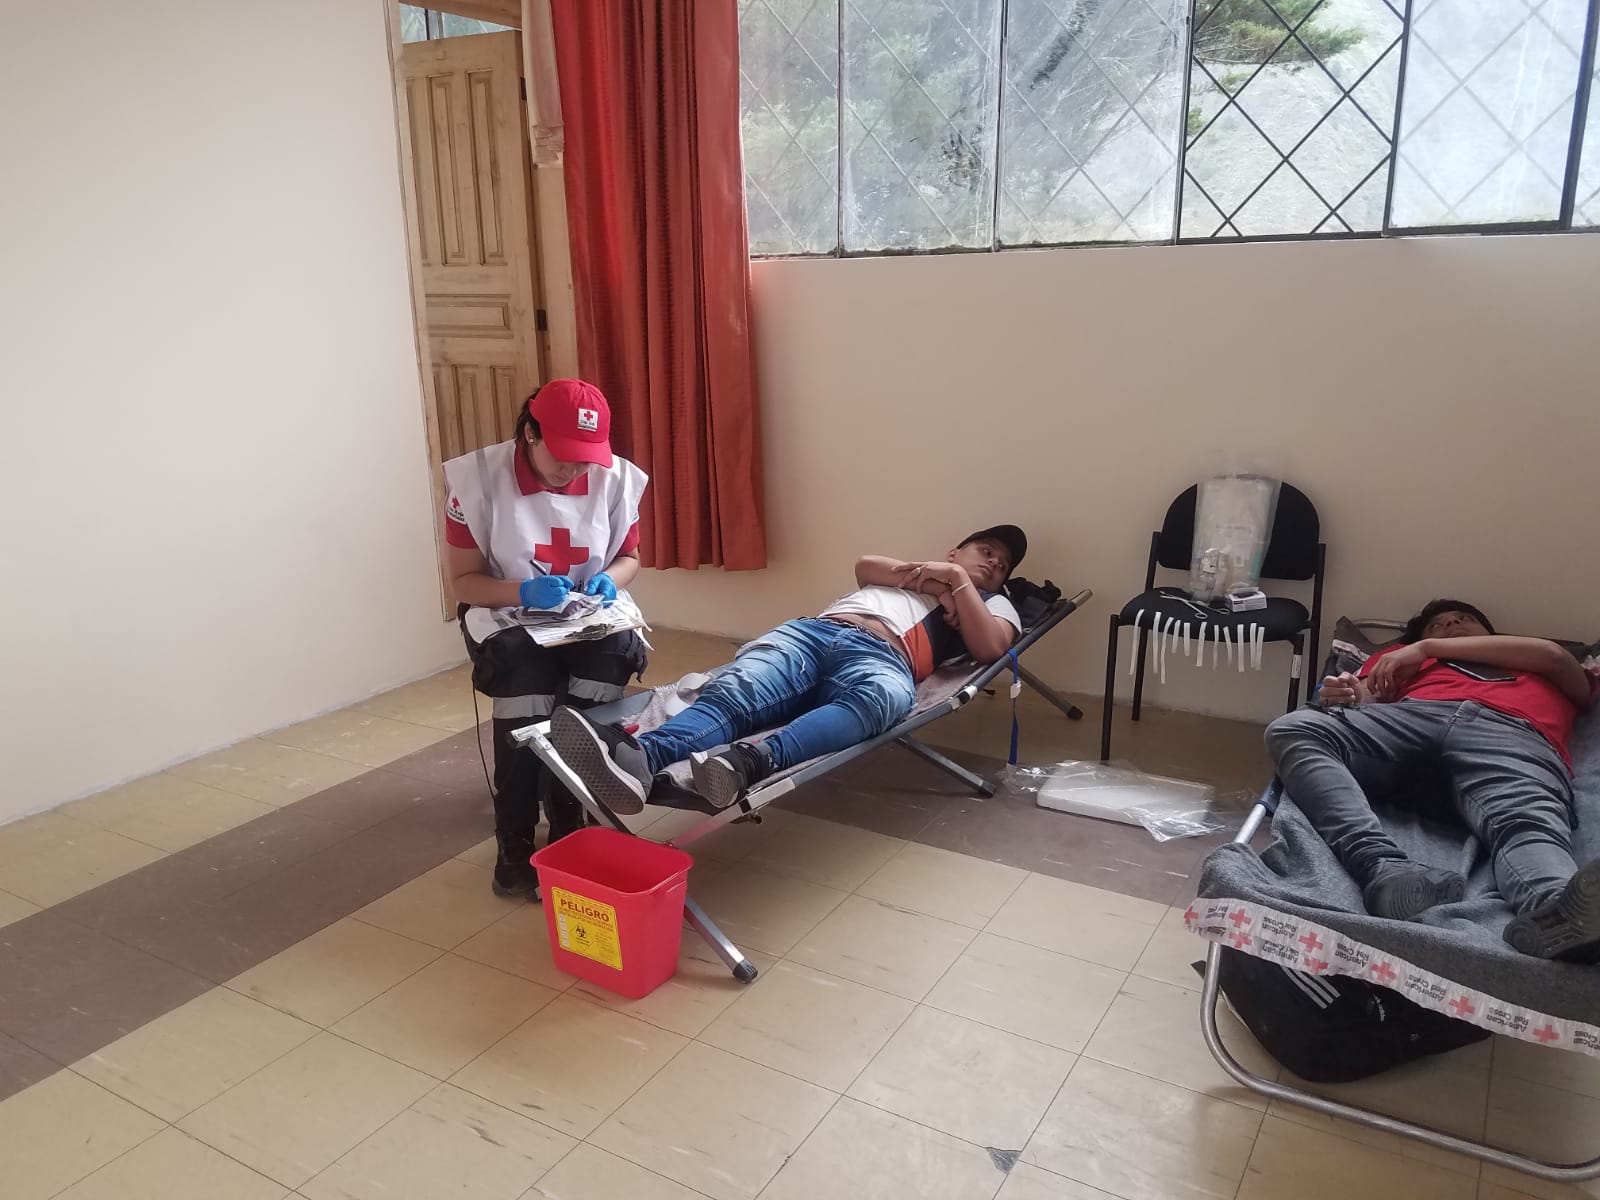 Campaña de donación de sangre en Ambato